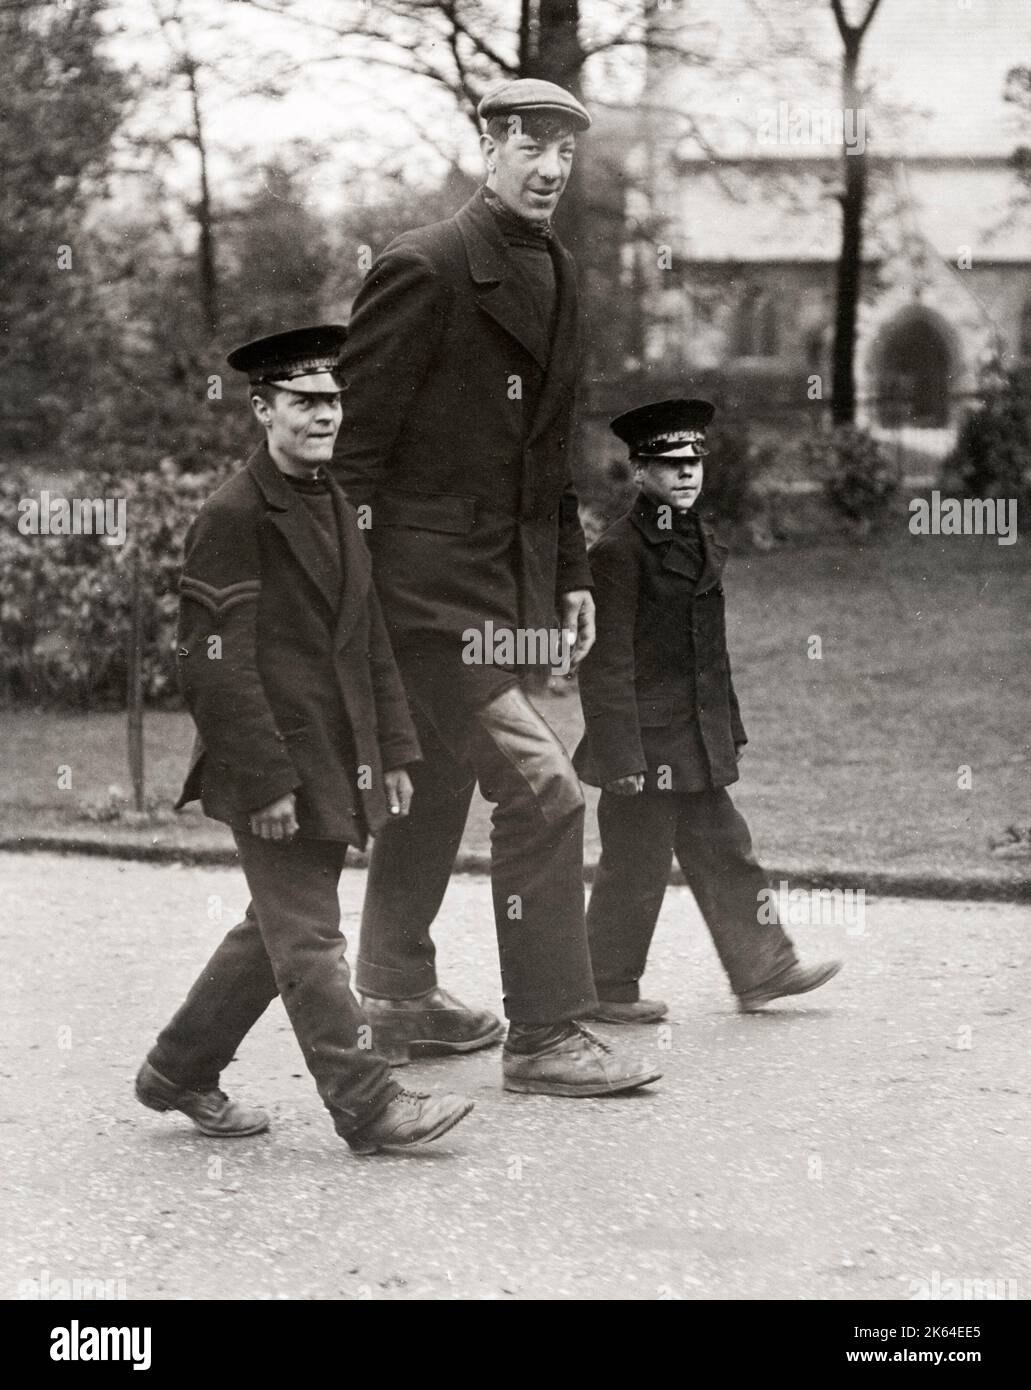 Fotografia d'epoca dell'inizio del XX secolo - Frederick Kempster (1889-1918) è stato uno showman inglese, famoso per la sua altezza estrema e conosciuto anche come The English Giant o Blackburn Giant. Era alto 2,18 m (7 ft 2 in), aveva un'apertura del braccio di 8 ft 4,5 in (2,55 m) e pesava 170 kg (370 lb). Foto Stock